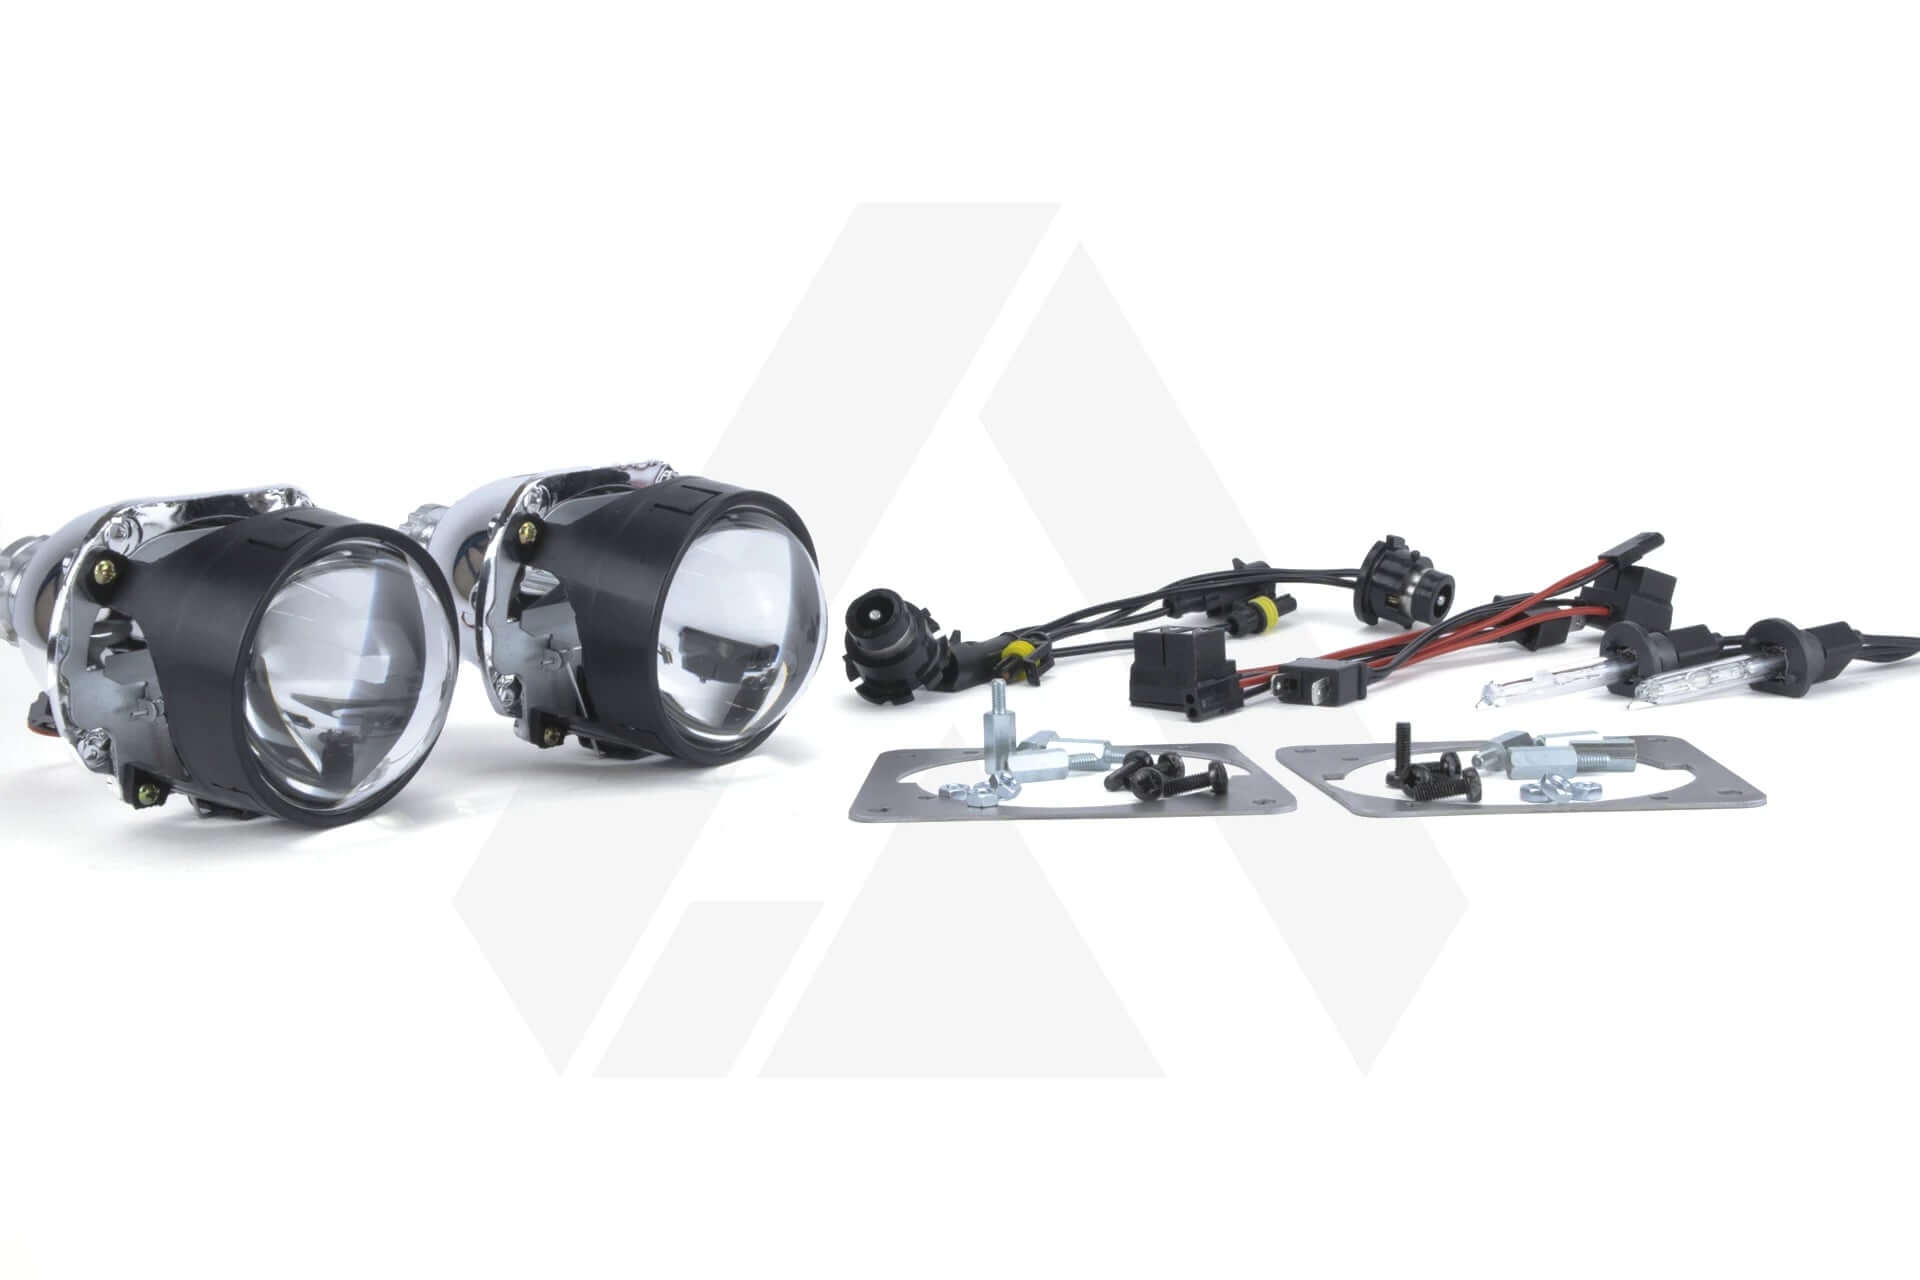 Opel Astra G 98-04 bi-xenon licht reparatie & upgrade kit voor xenon koplampen